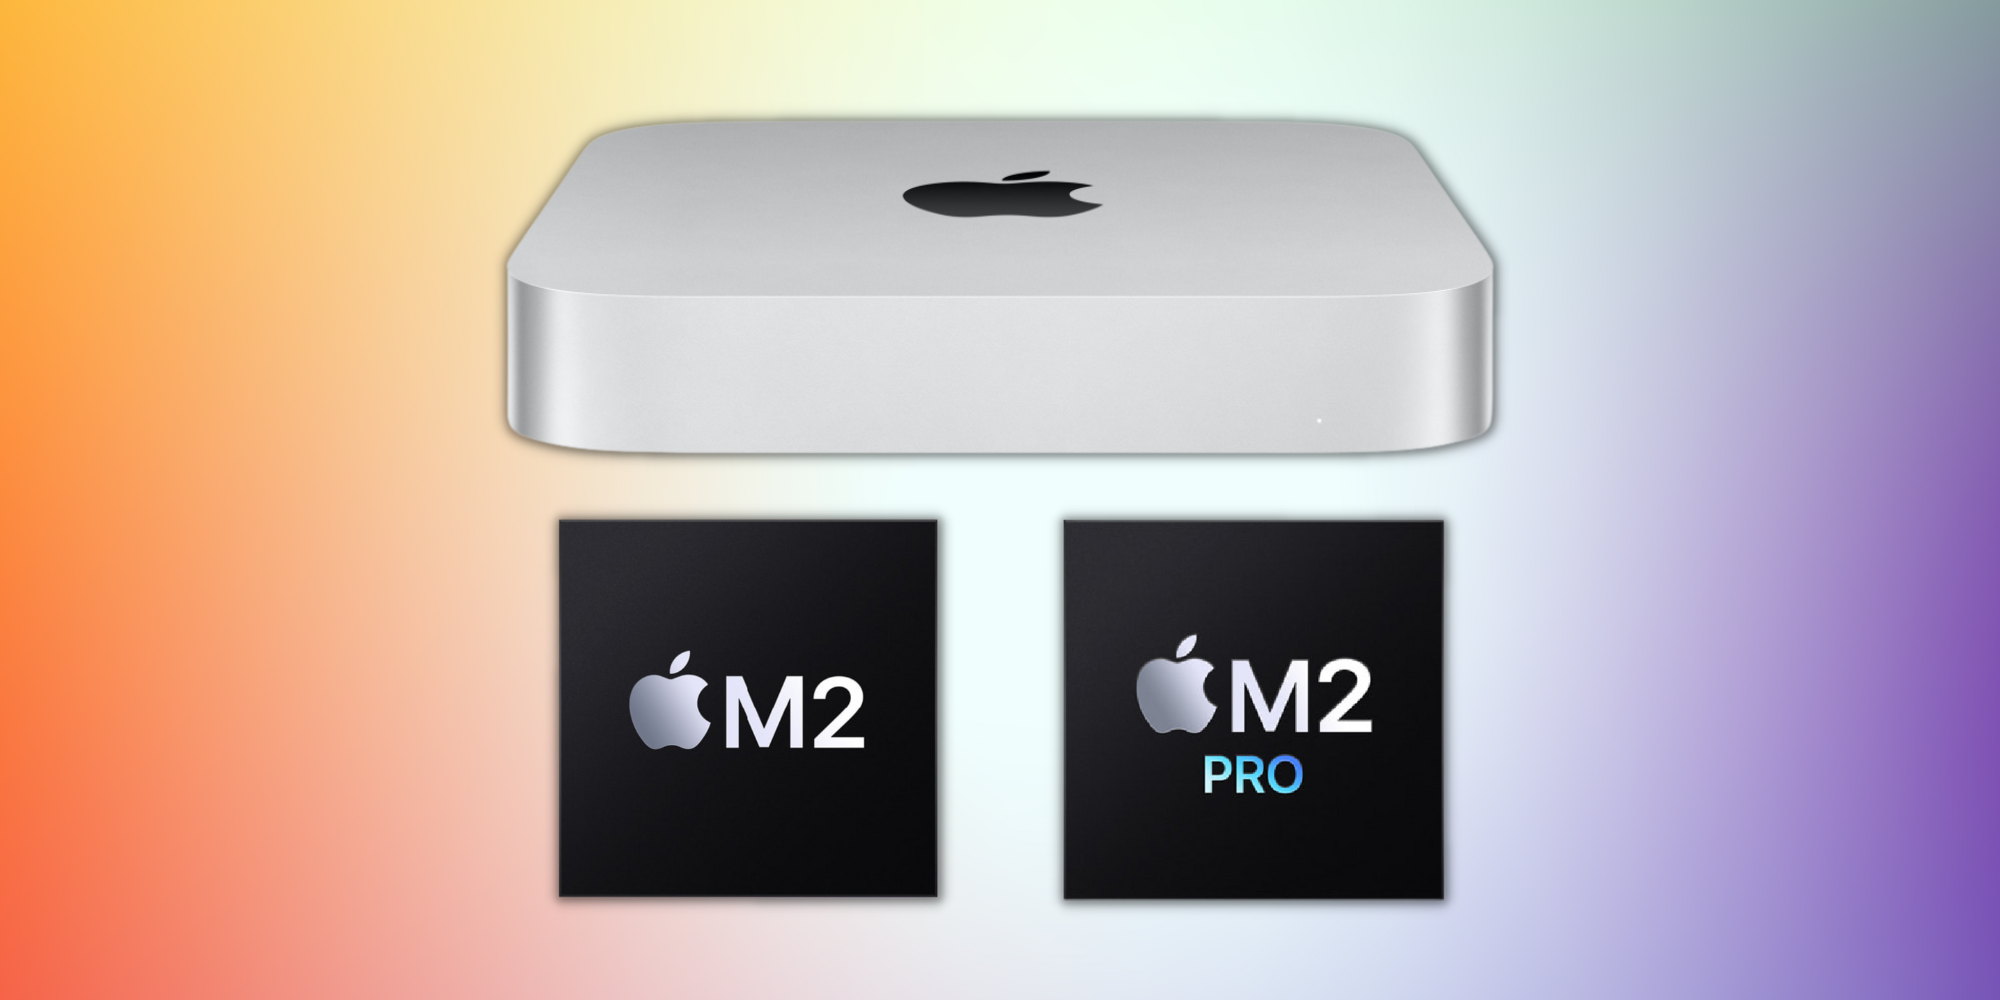 ¿A cuántos monitores se puede conectar una Mac Mini M2?